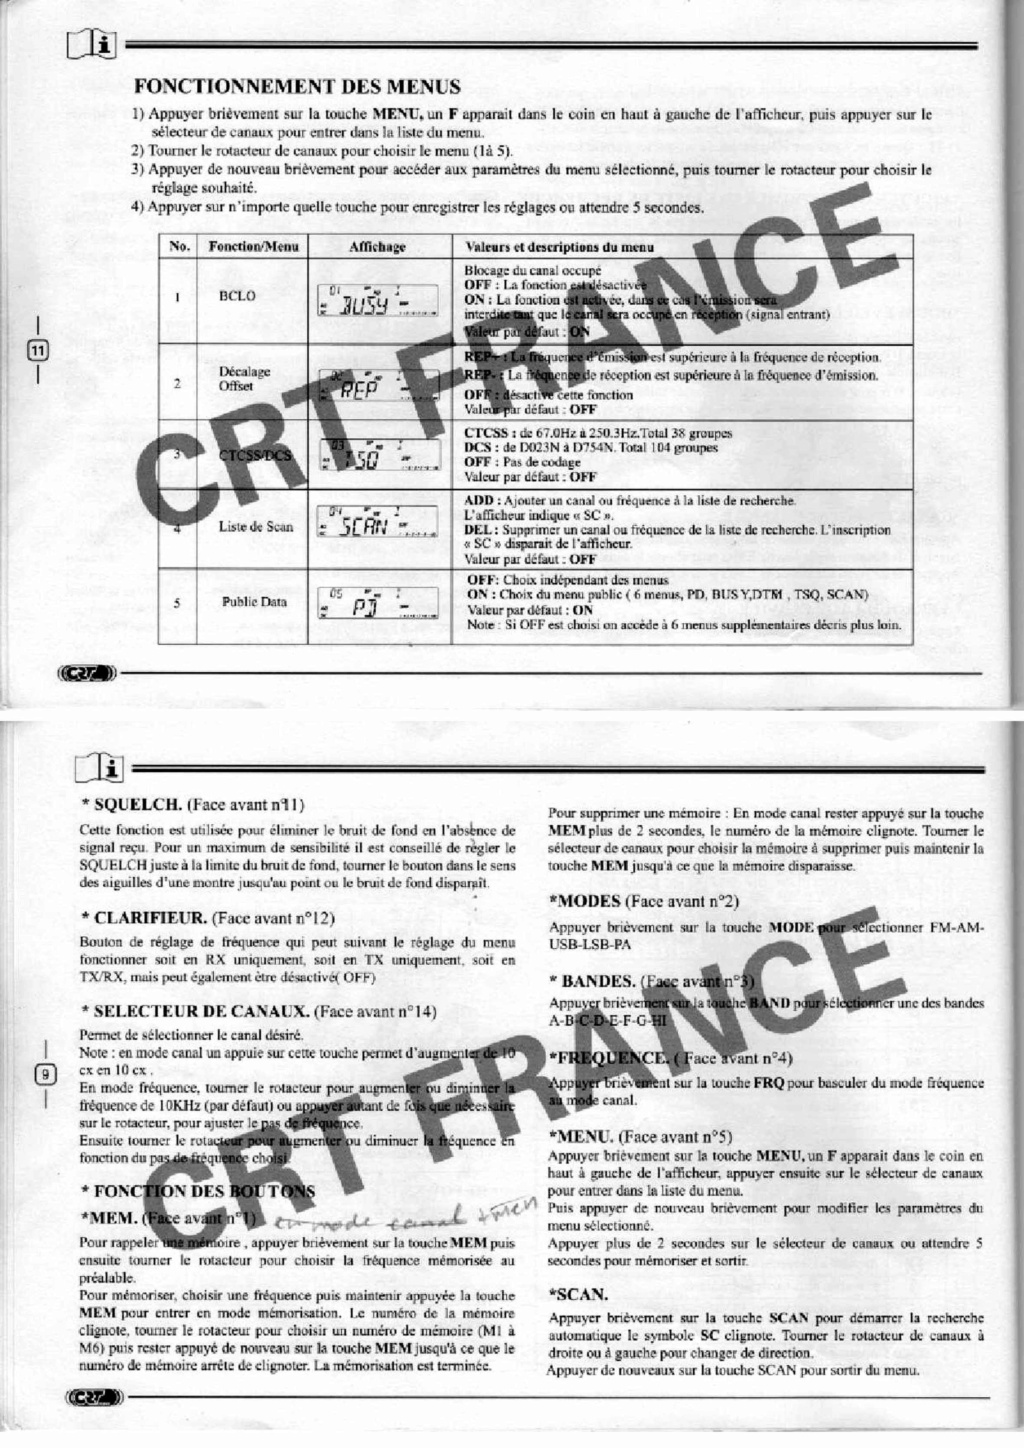 Tag manuel sur La Planète Cibi Francophone Feuill17